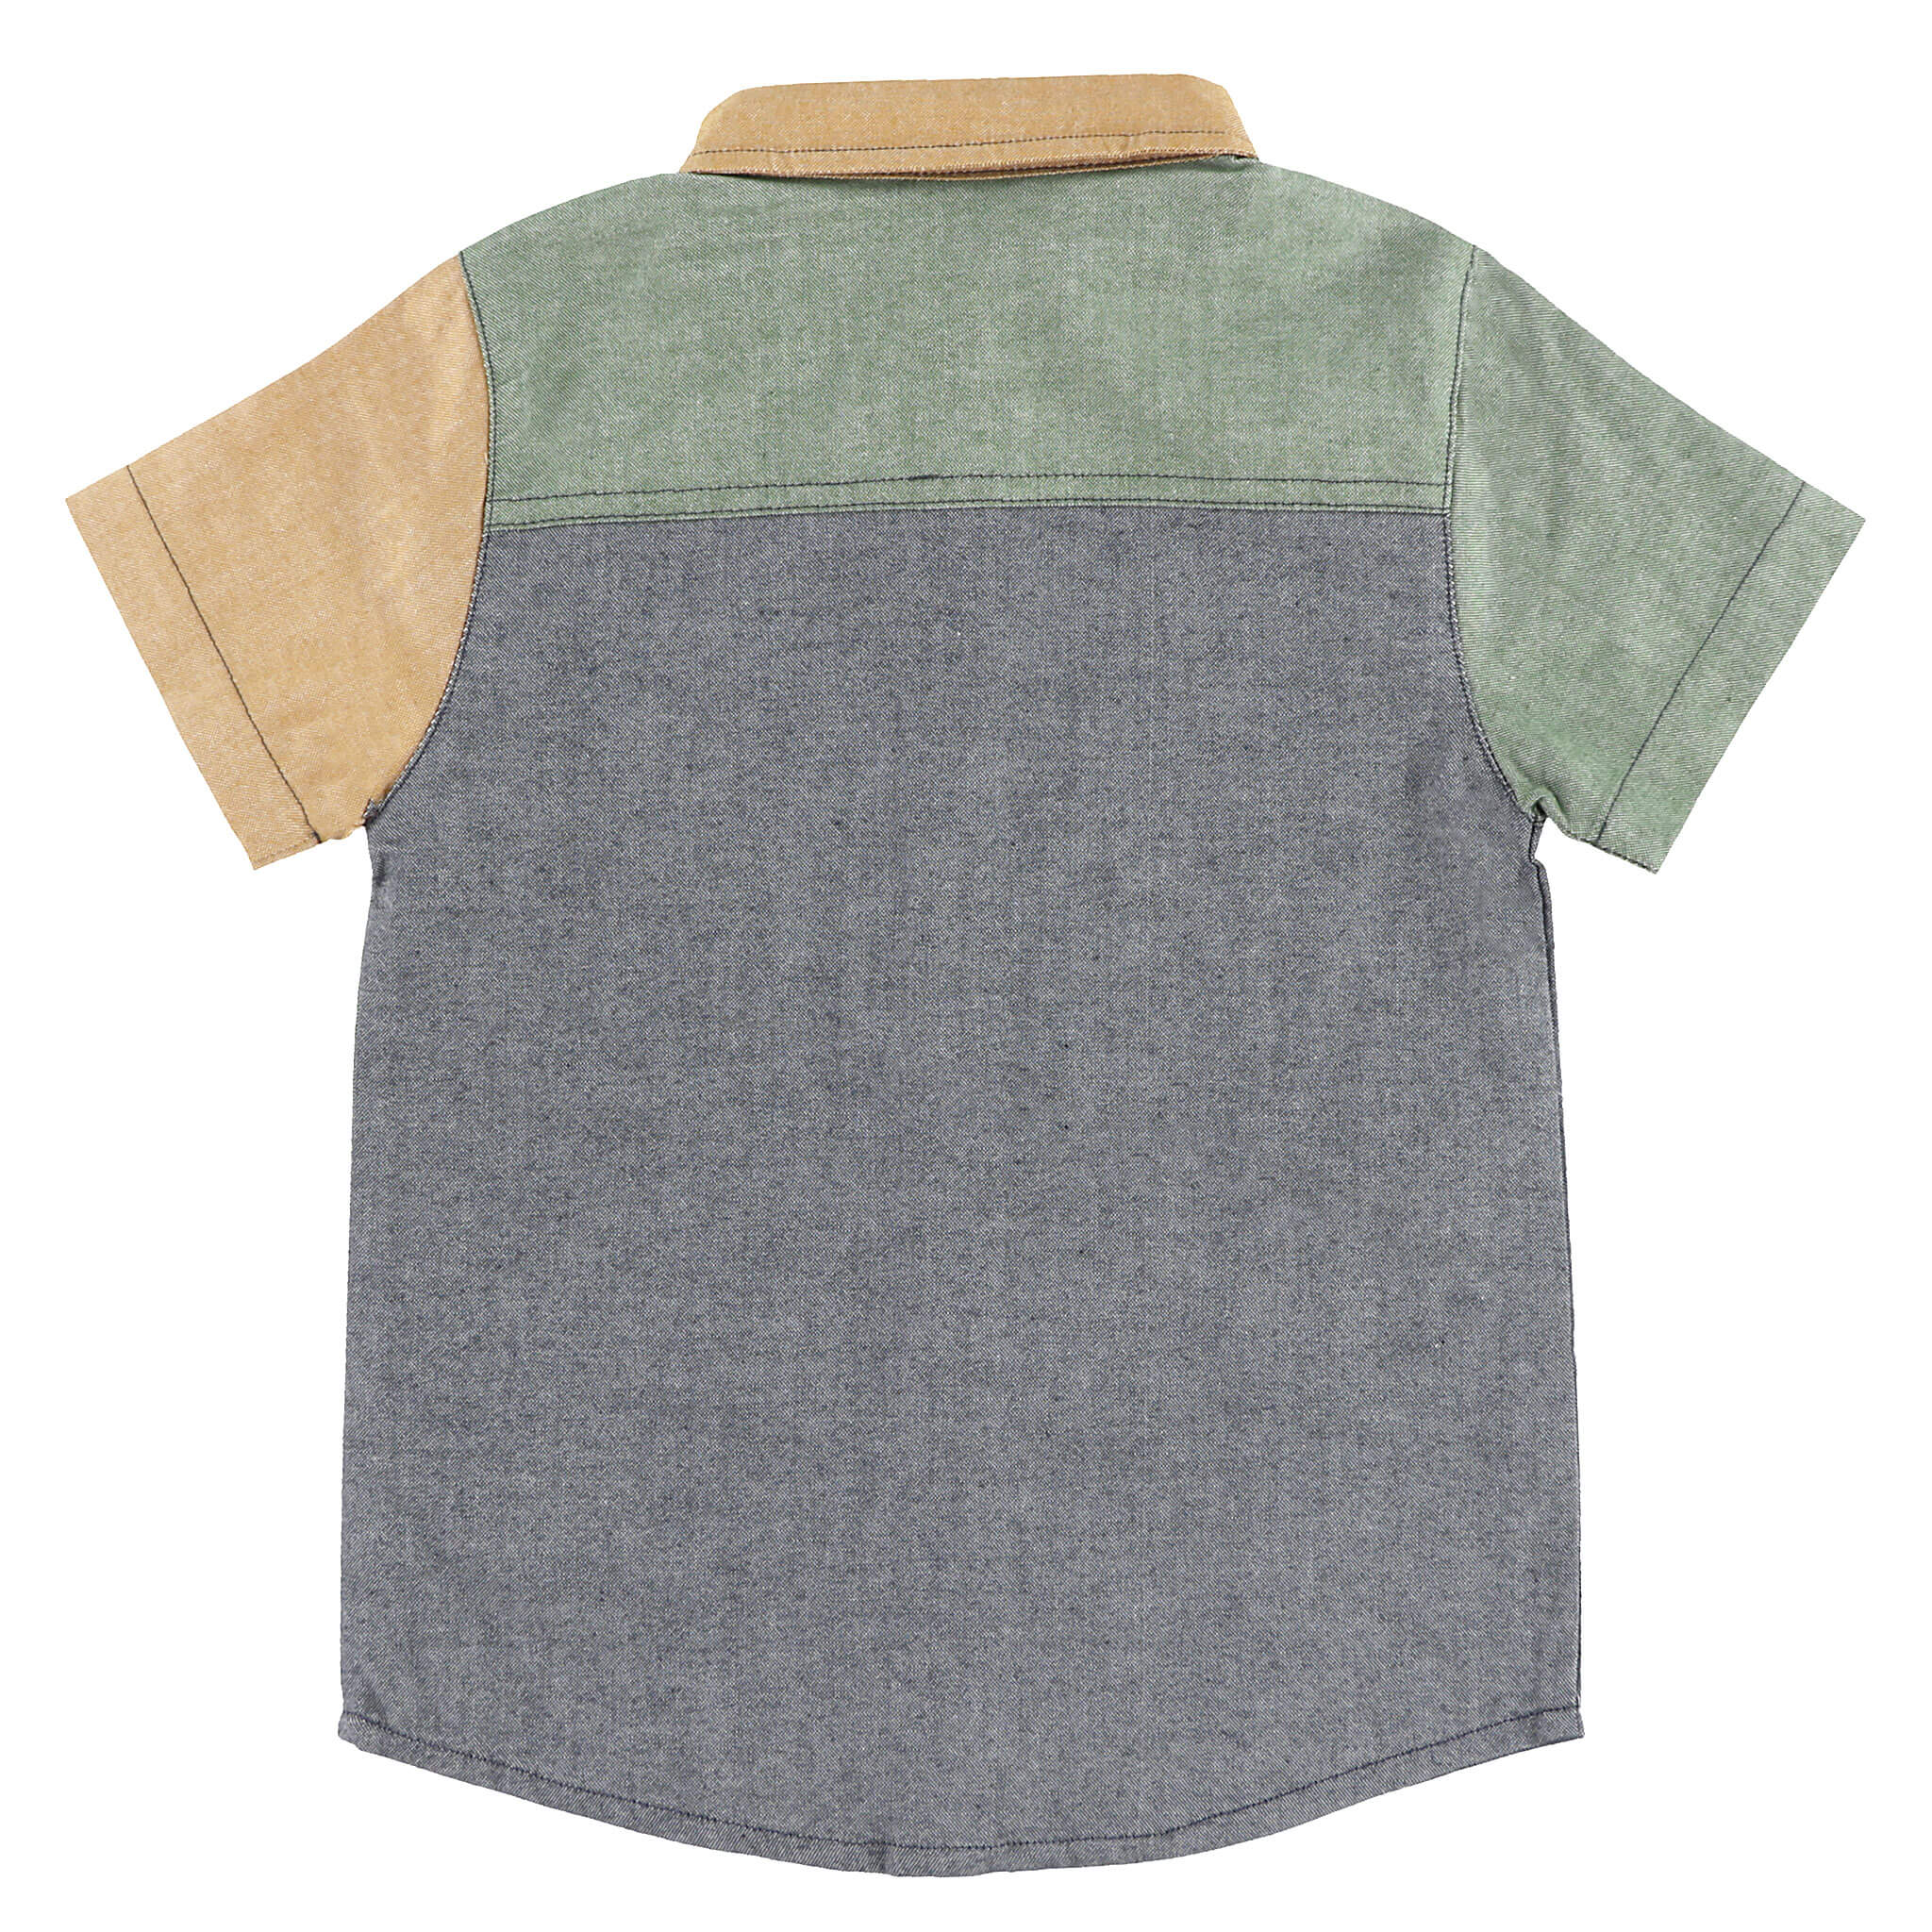  Chemise manches courtes bloc couleurs - Enfants 